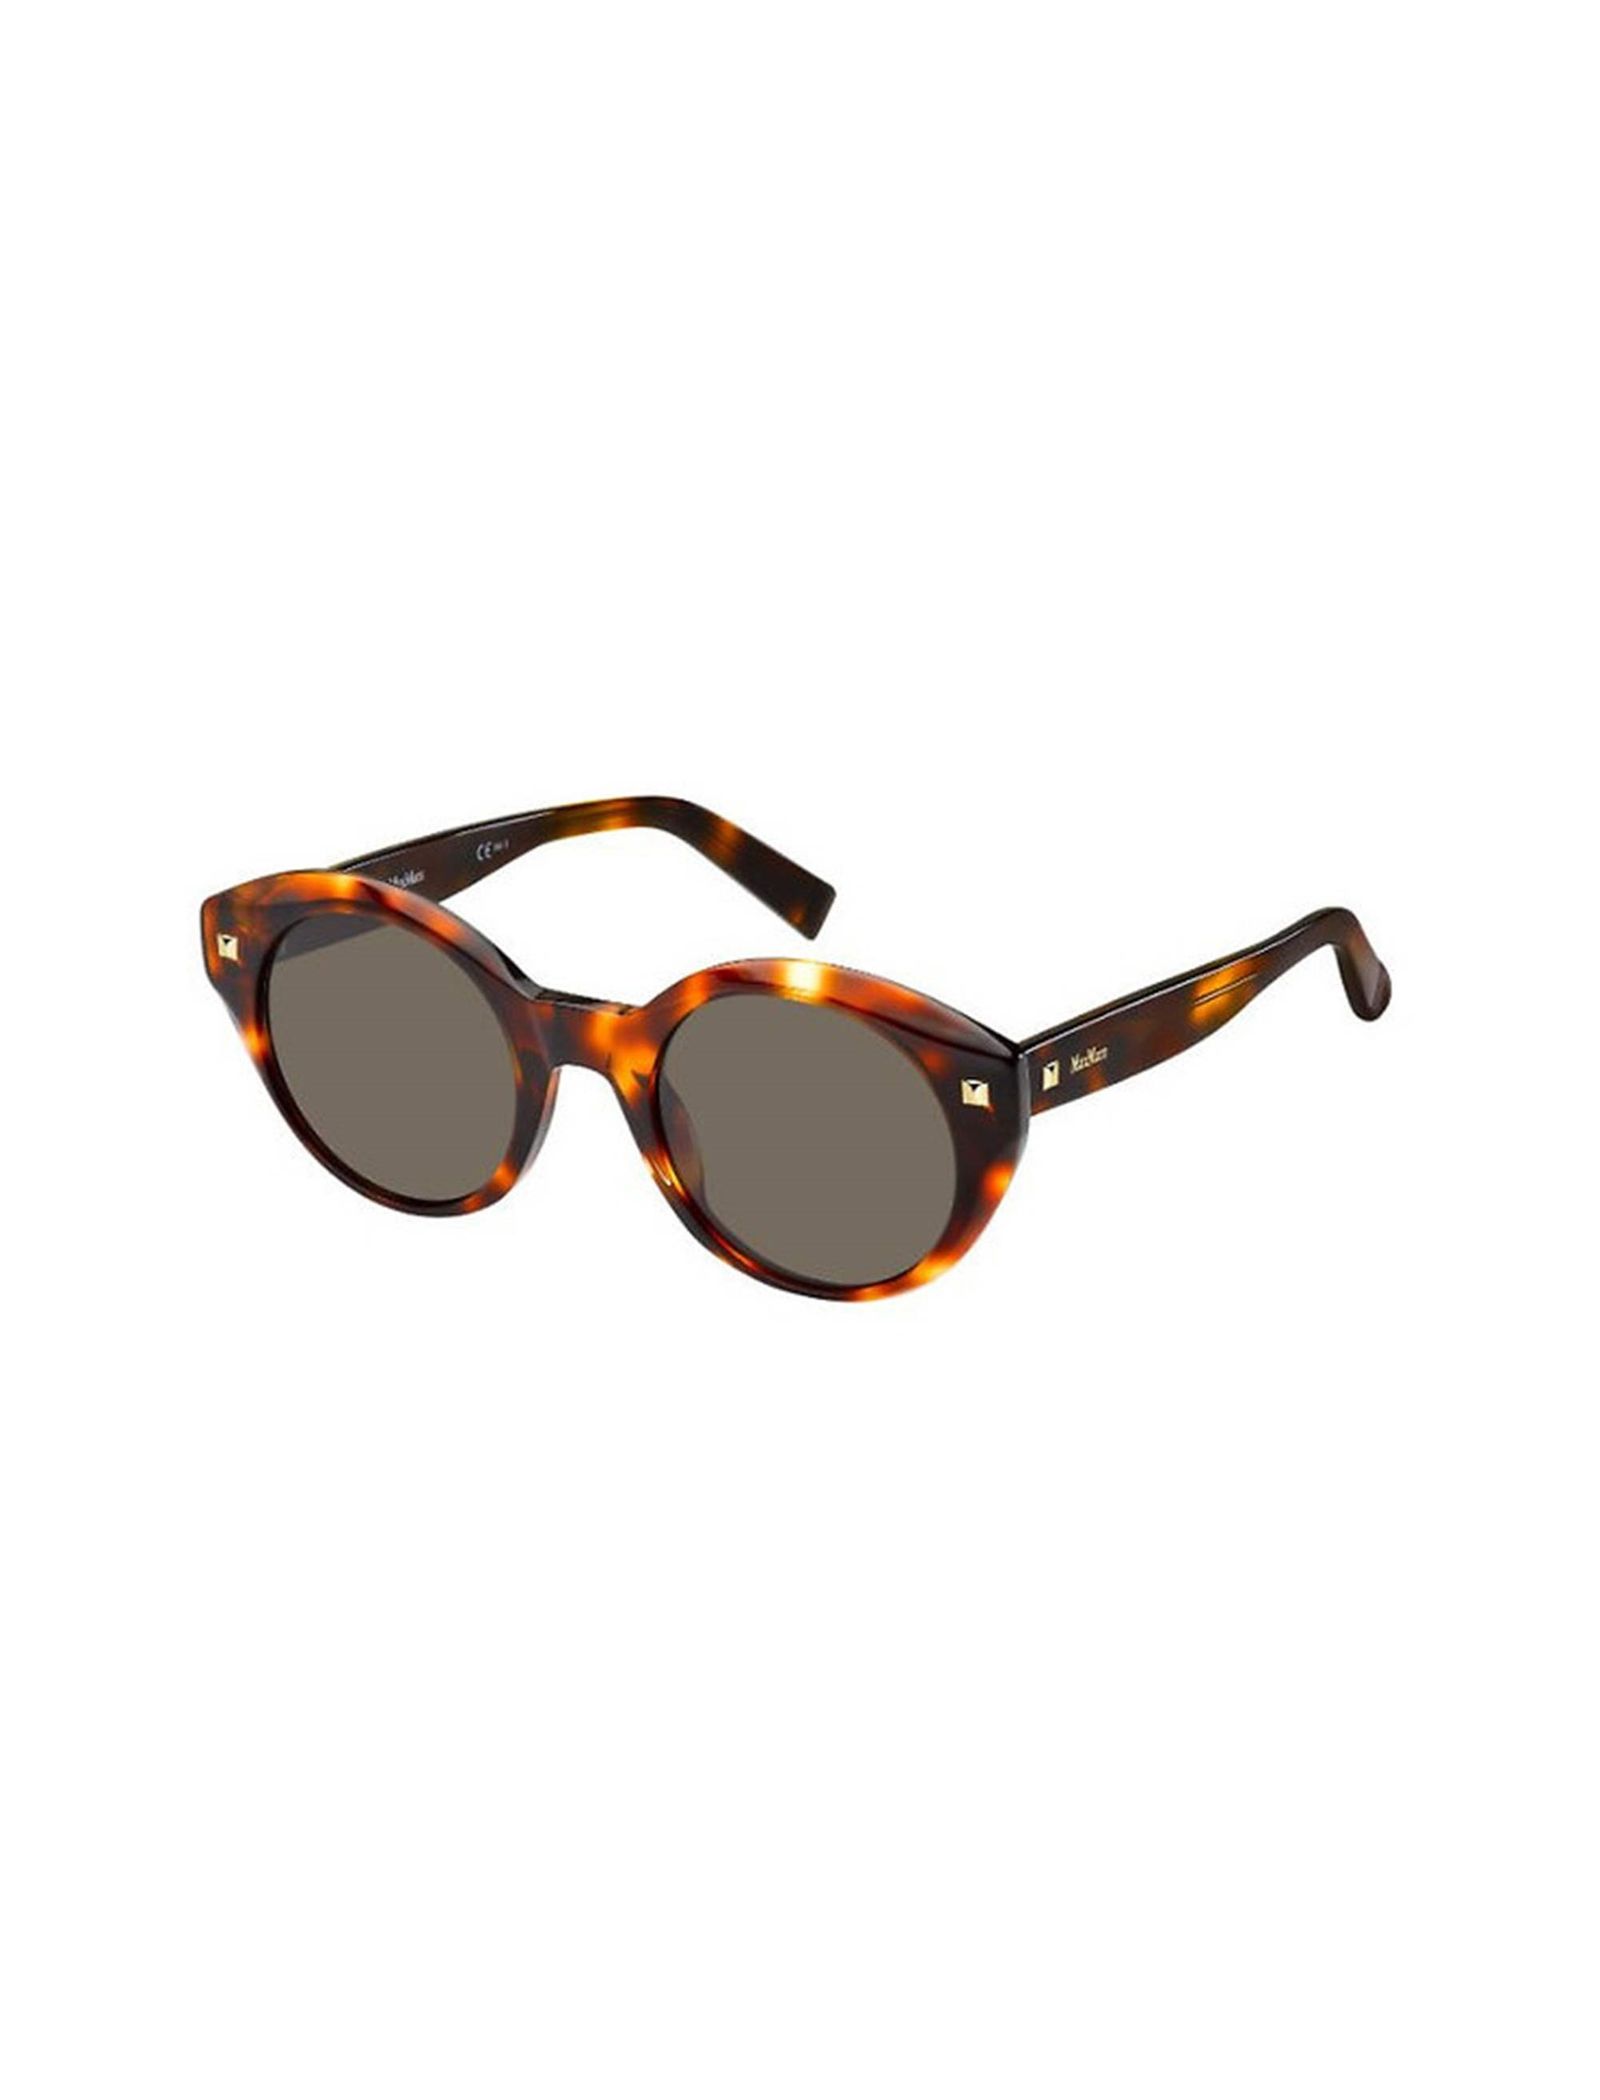 عینک آفتابی گربه ای زنانه - مکس مارا - قهوه اي و نارنجي - 3